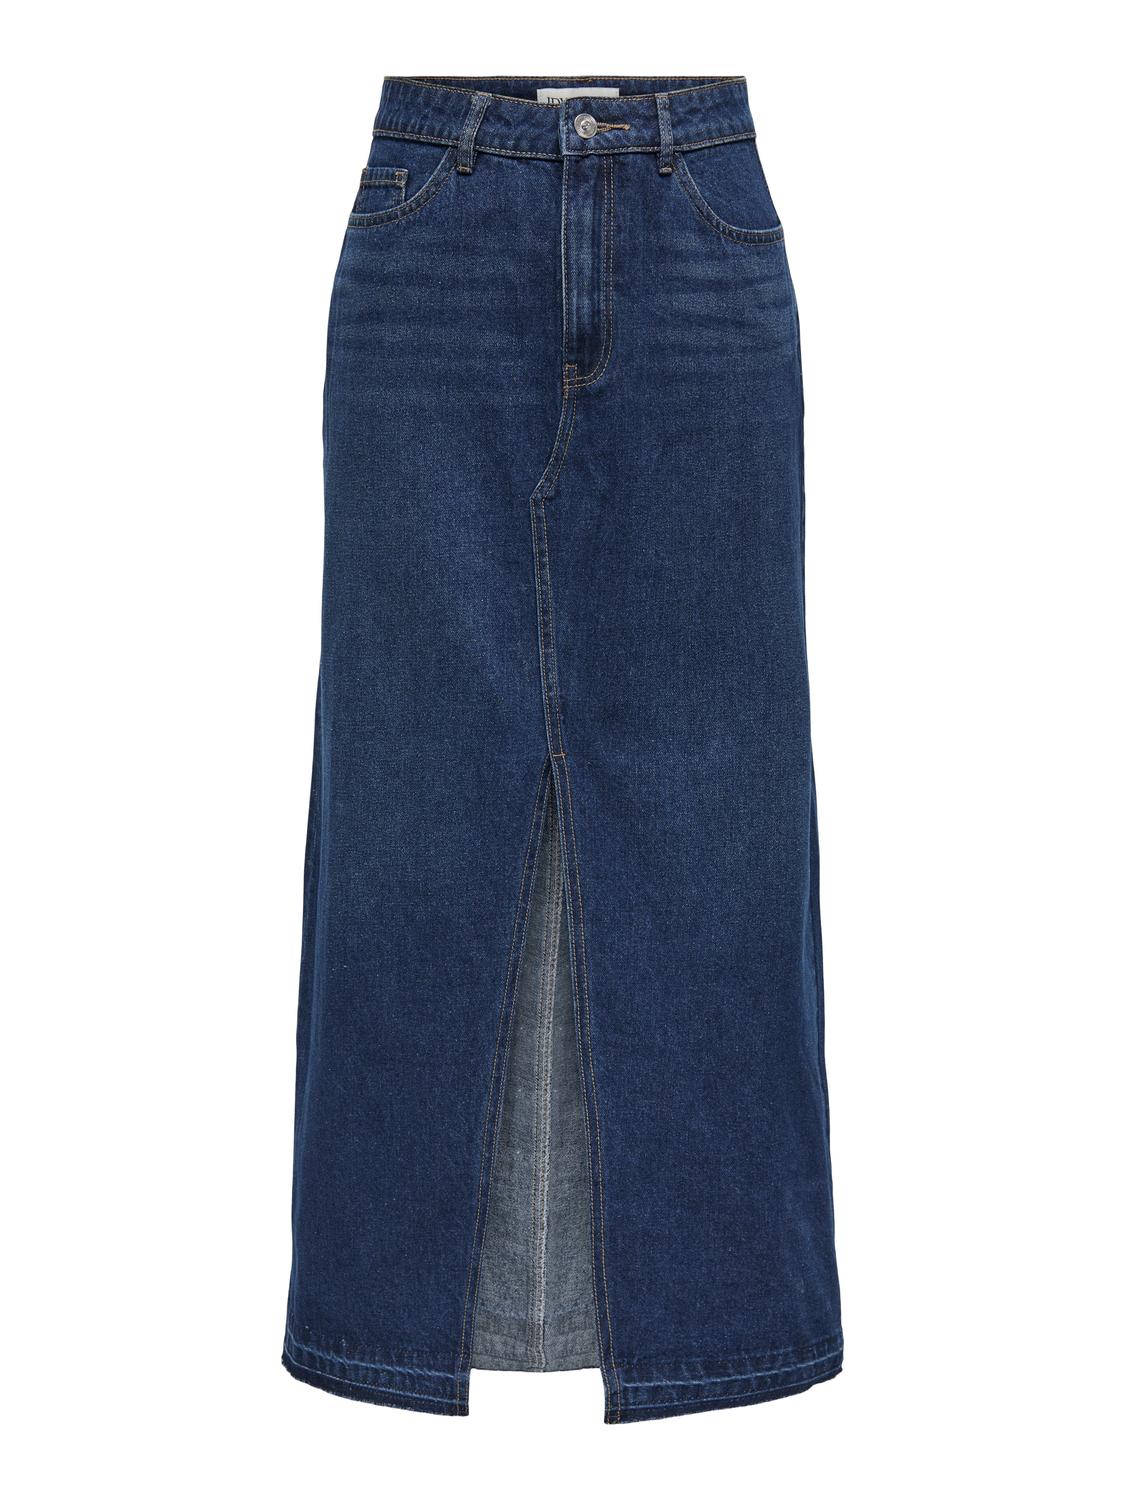 ONLY High waist Long skirt -Dark Blue Denim - 15317441